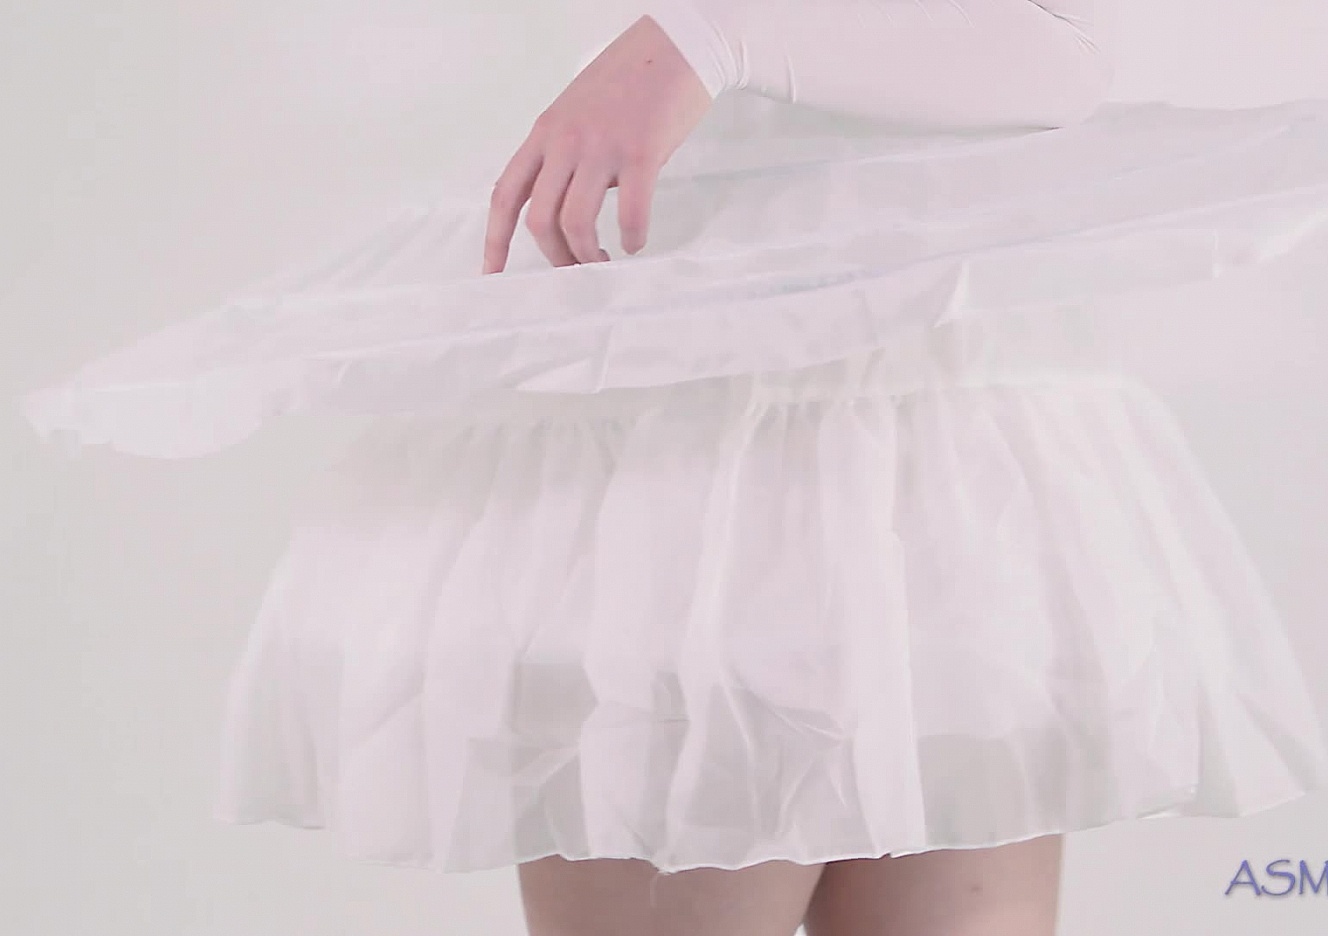 content/Jessica/Ballet dancer ASMR video/0.jpg